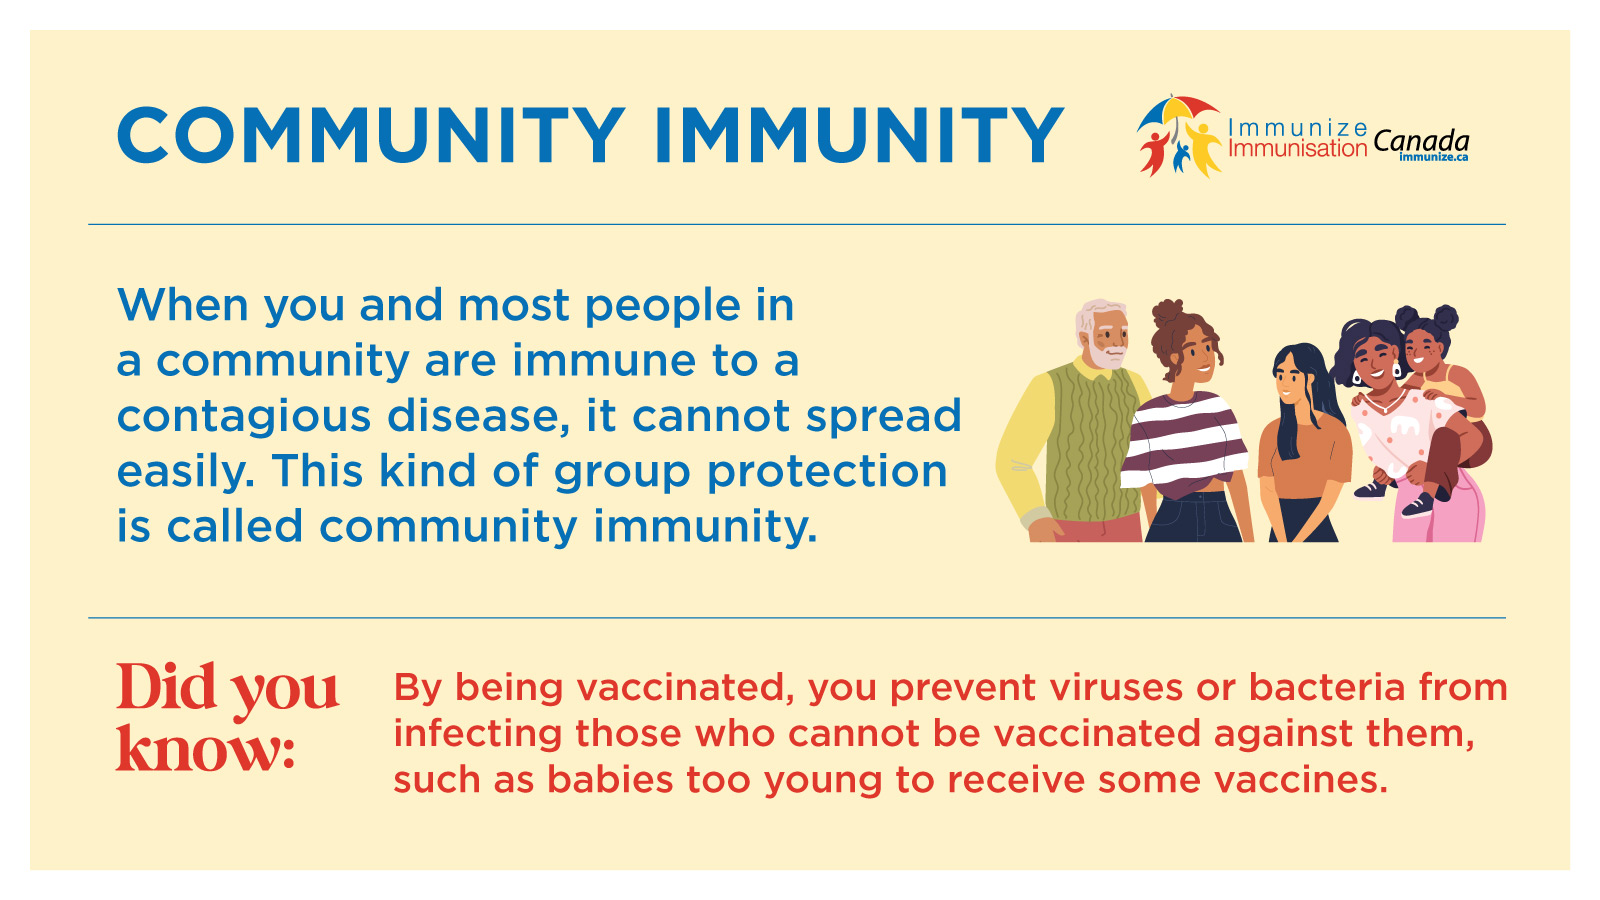 Community Immunity - social media image for Twitter